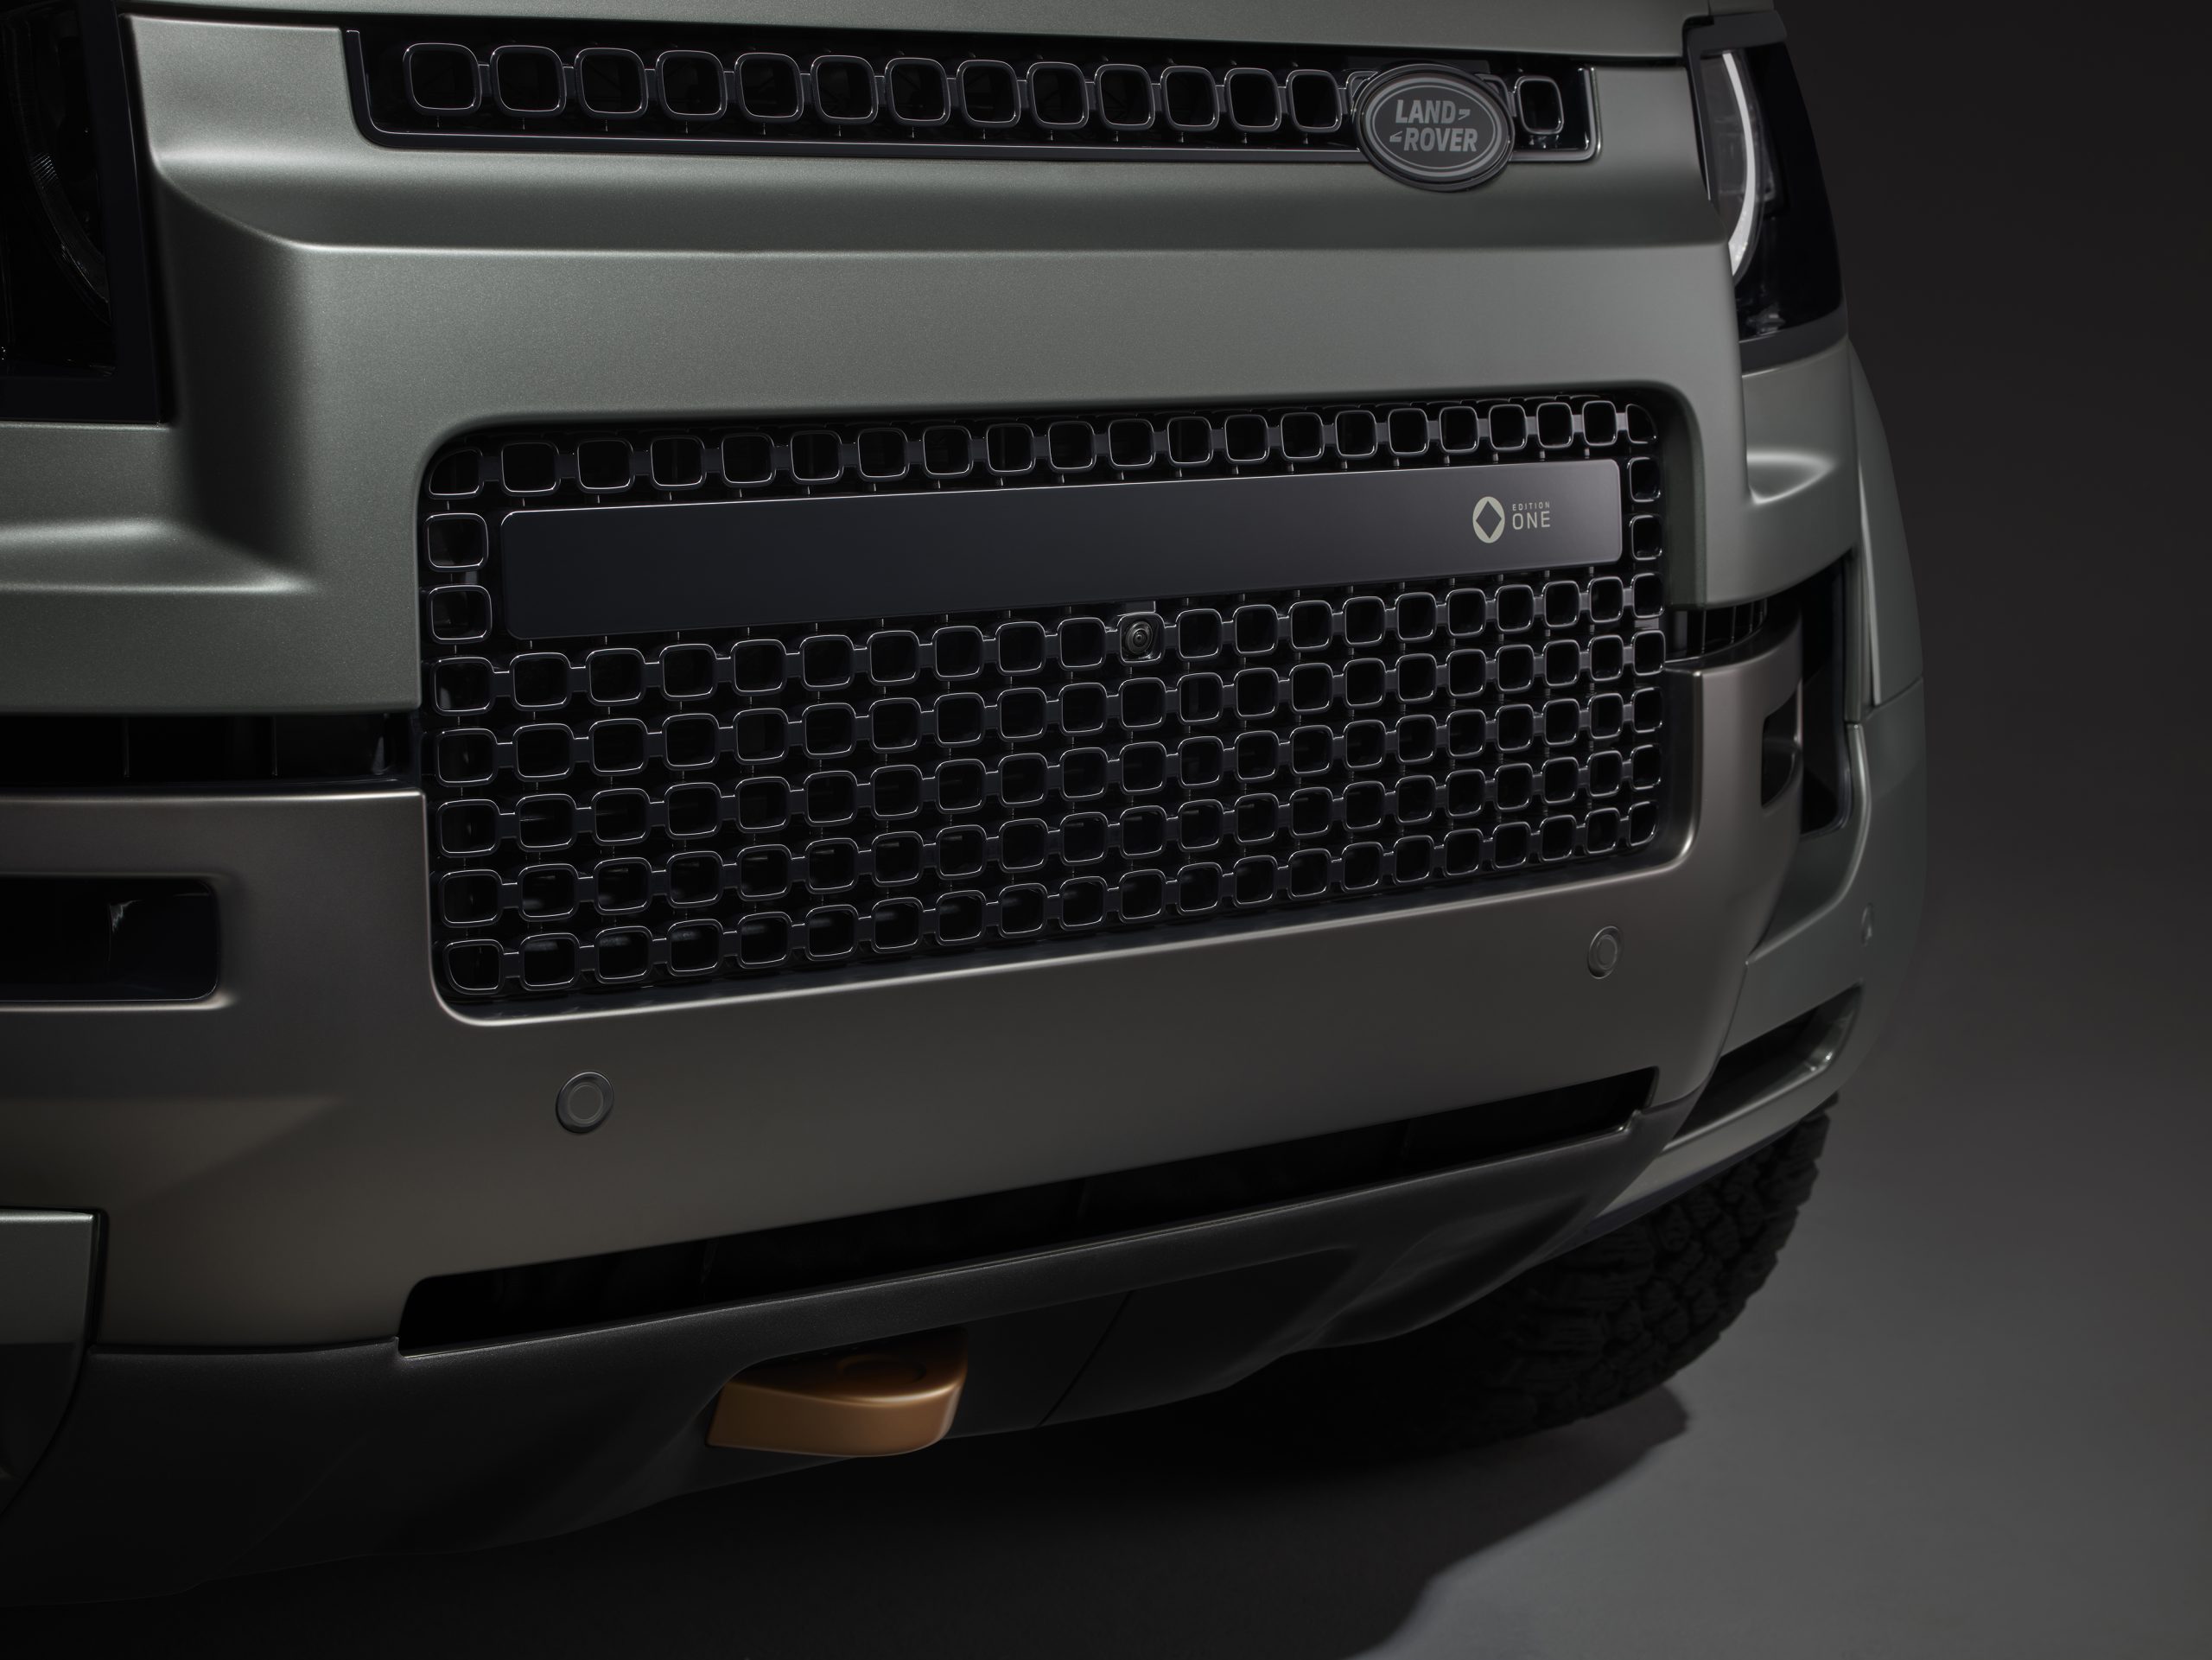 Land Rover Defender OCTA grille detail